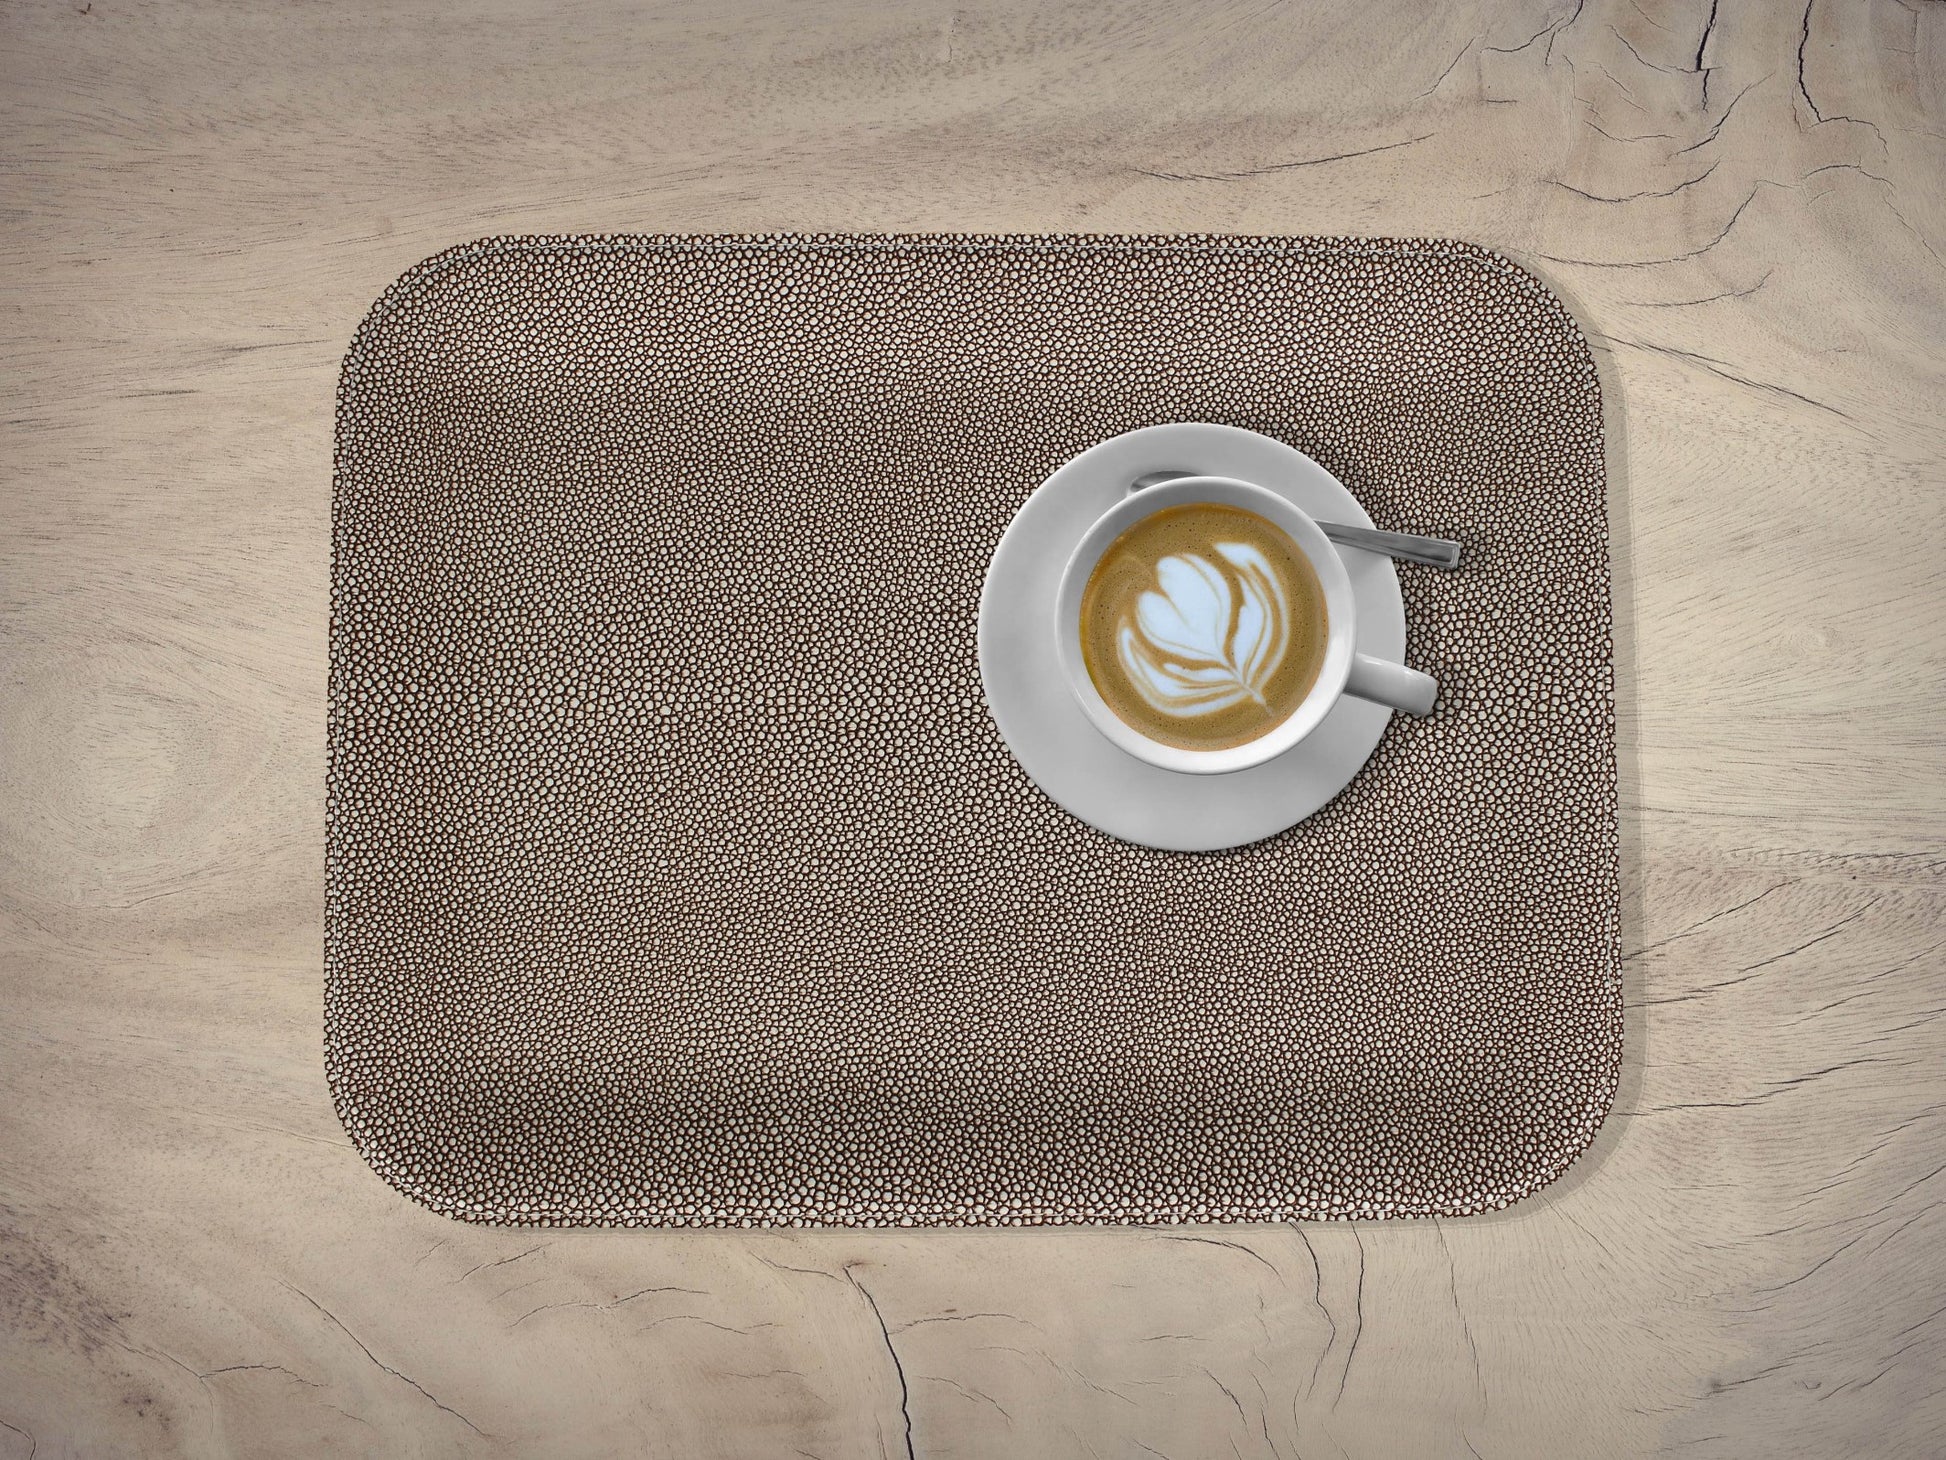 Ledertablett flach mit Tasse Kaffee auf Holztisch